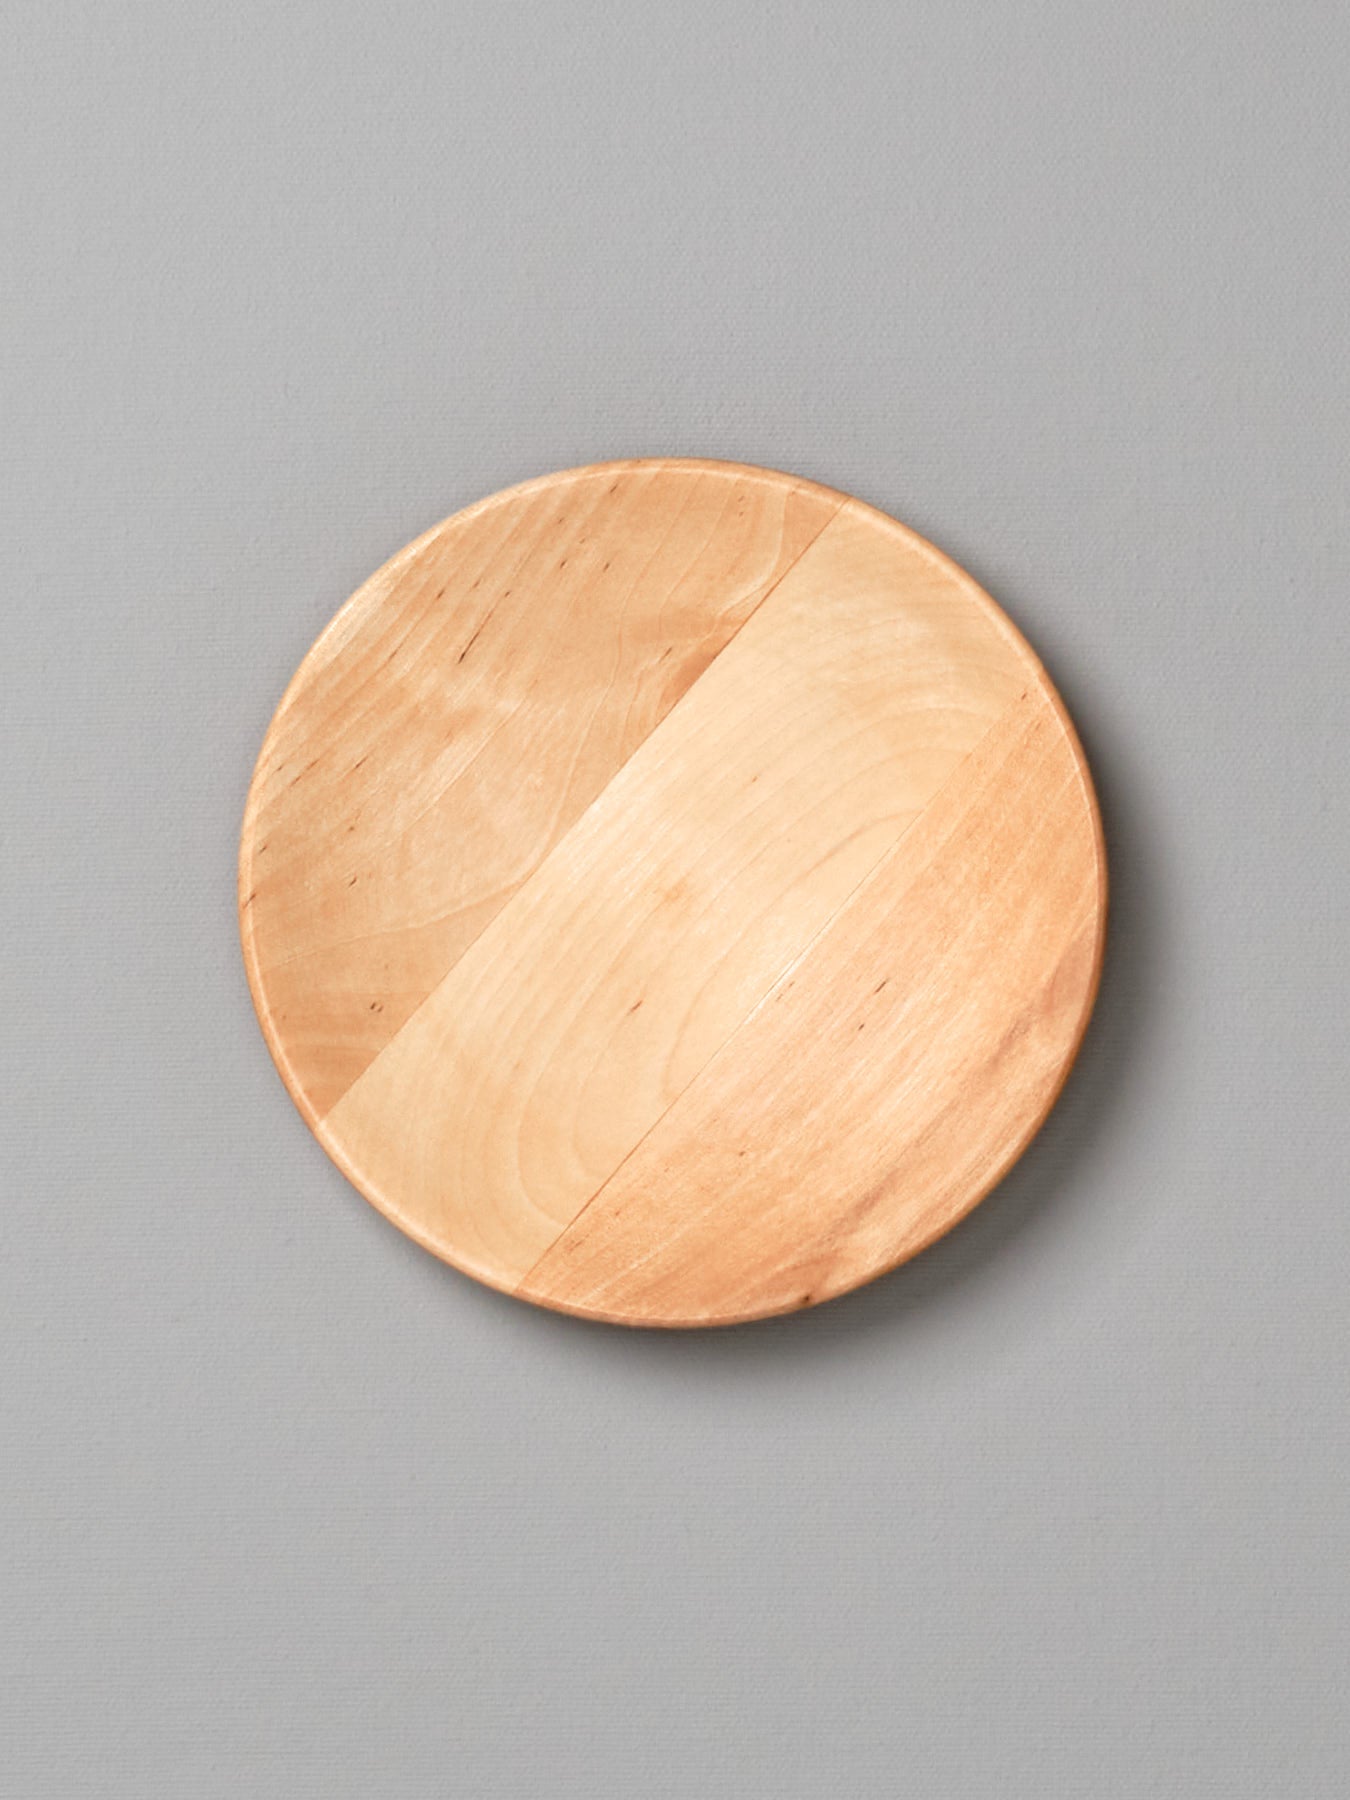 An Iris Hantverk wooden plate – large on a gray background.